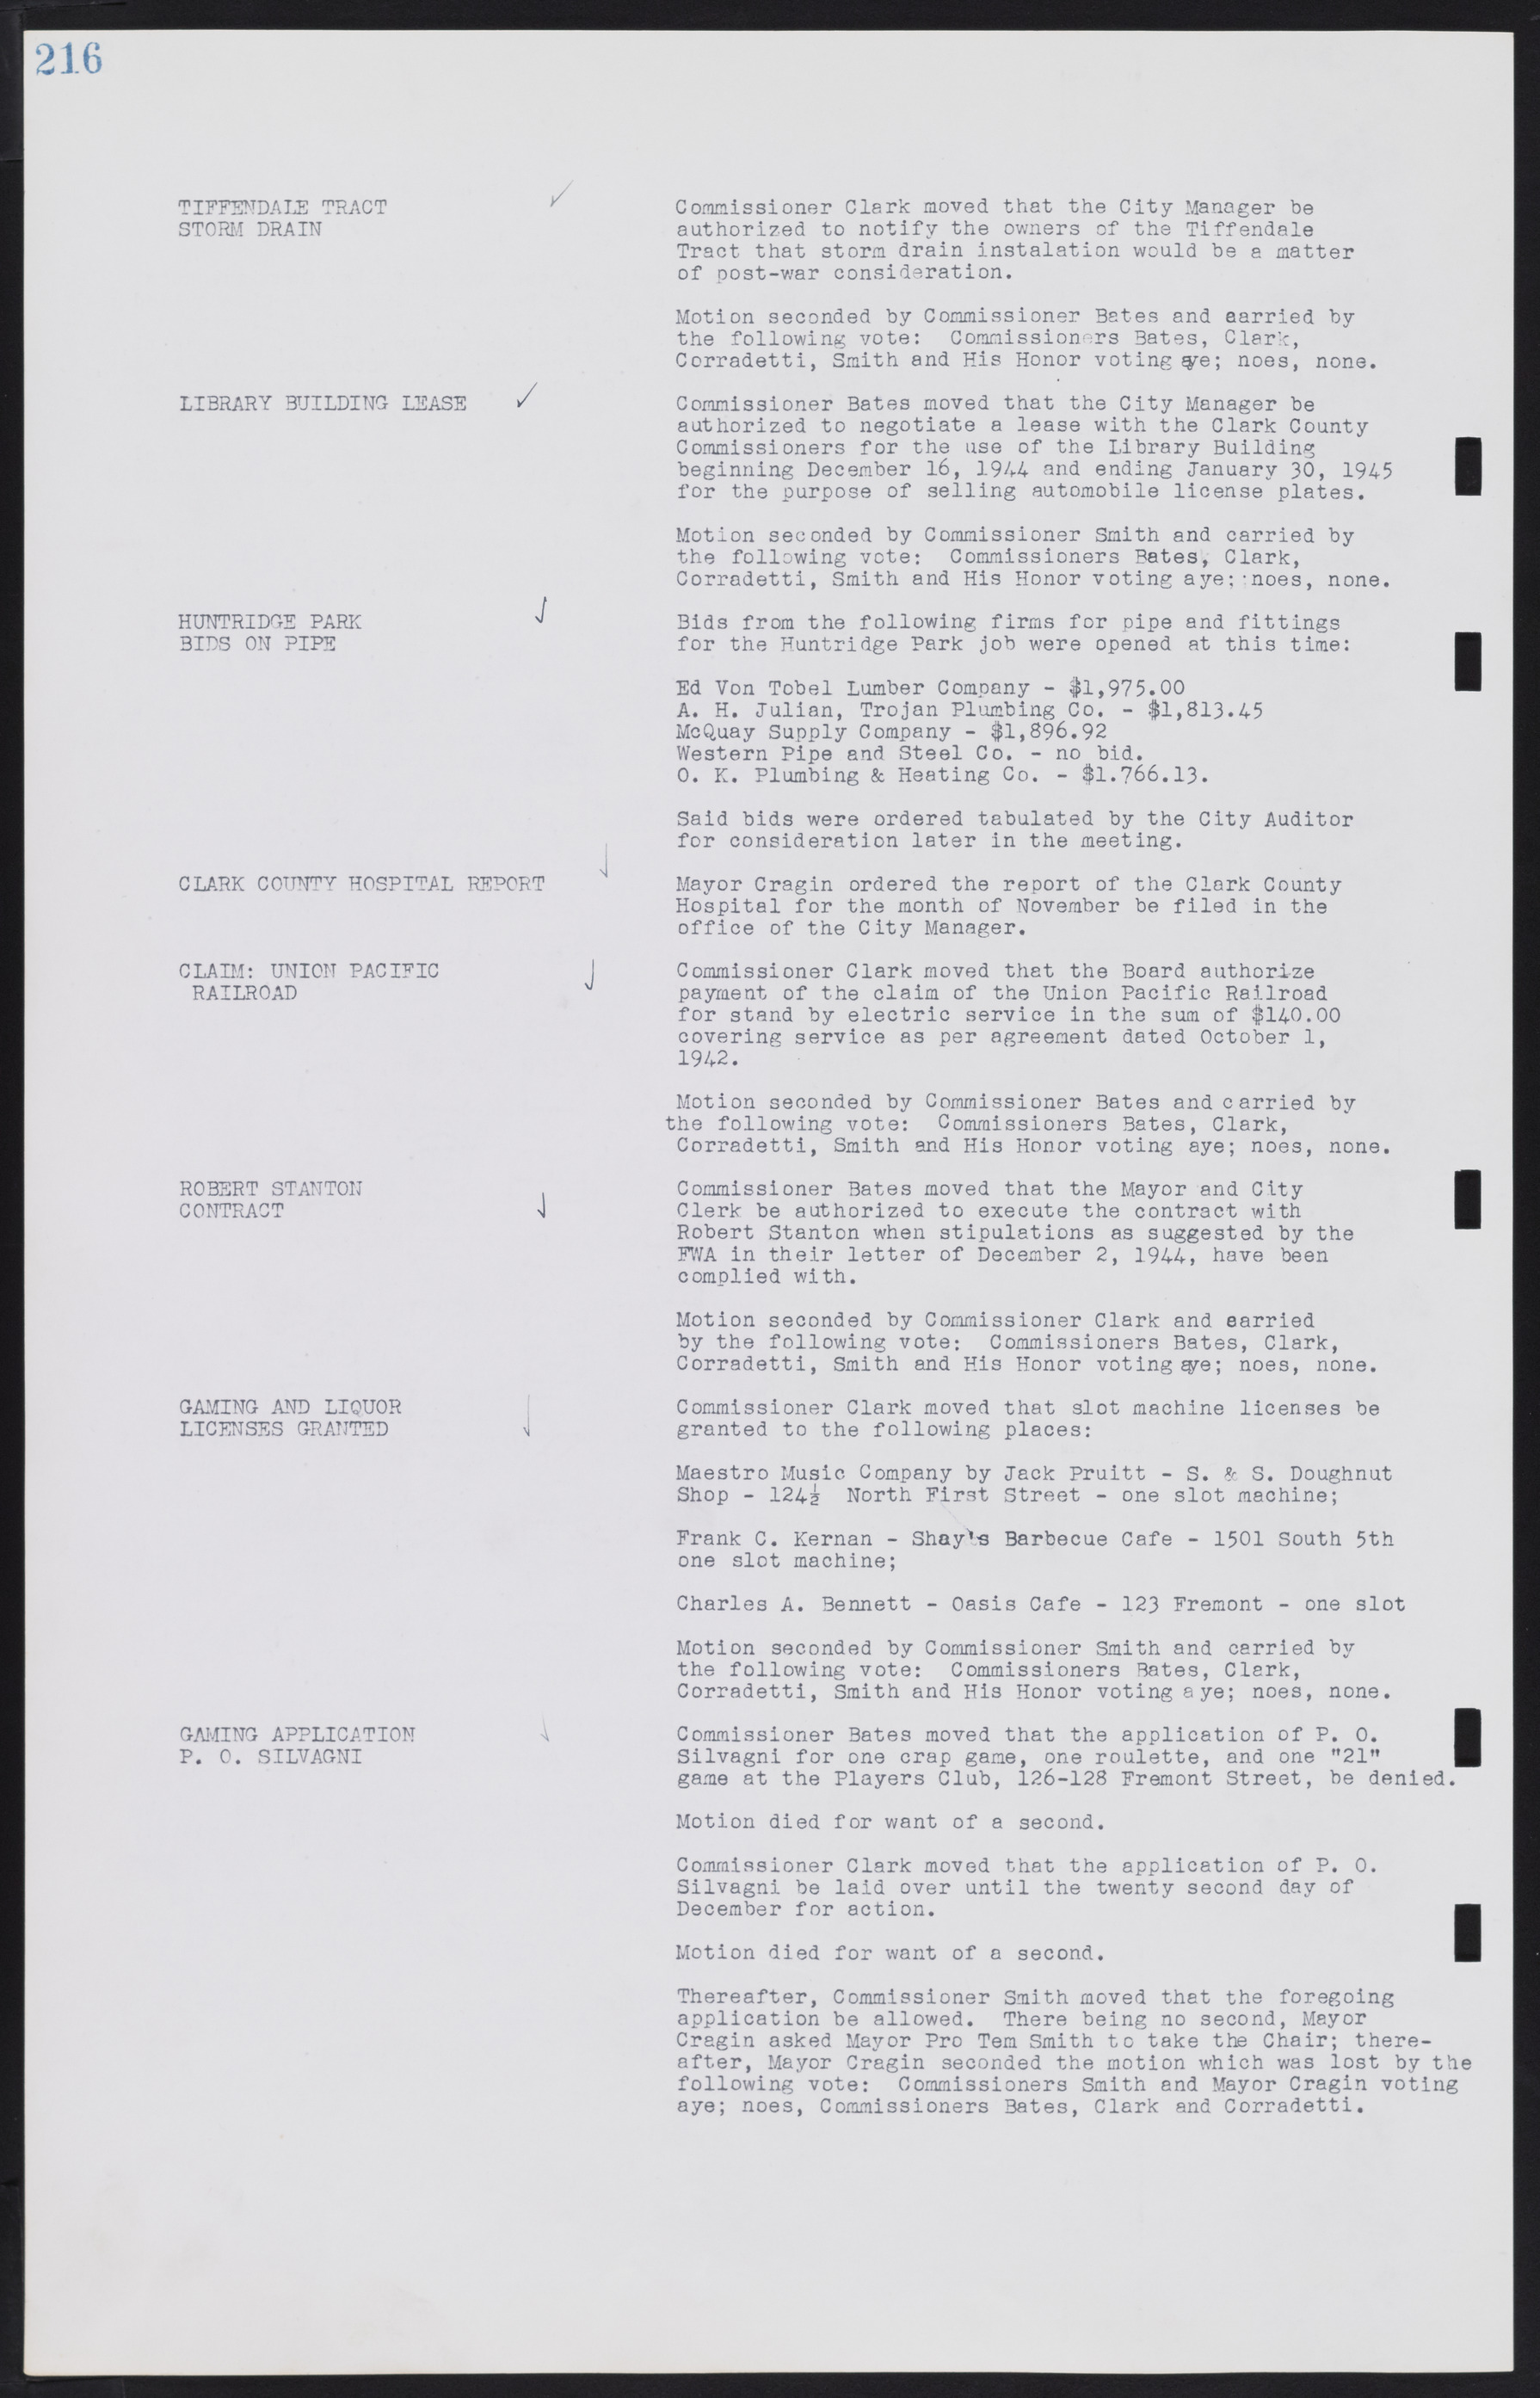 Las Vegas City Commission Minutes, August 11, 1942 to December 30, 1946, lvc000005-236